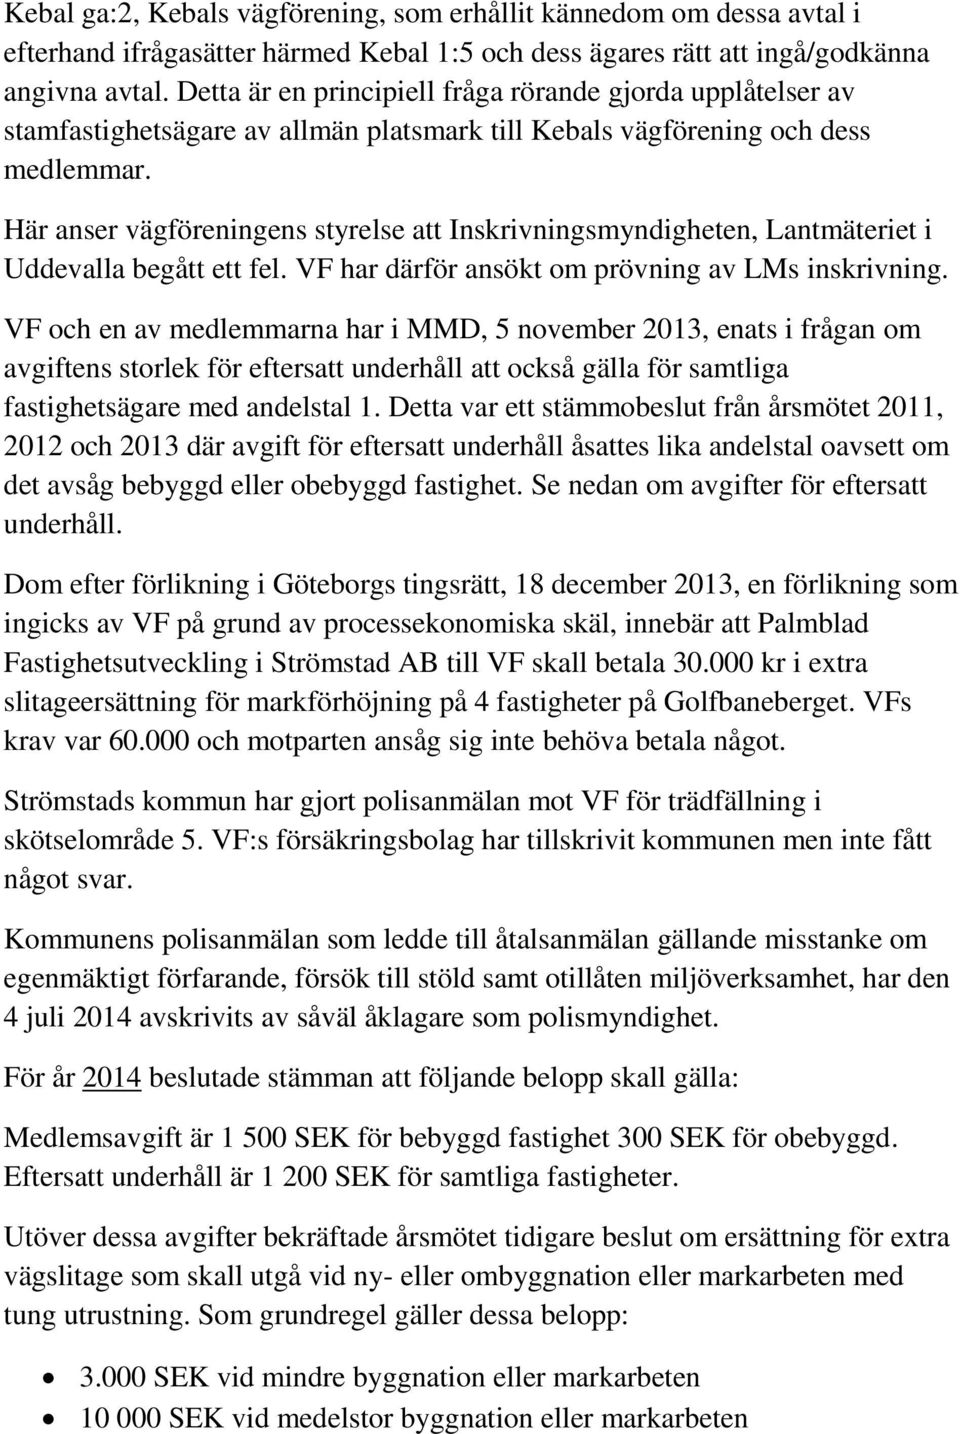 Här anser vägföreningens styrelse att Inskrivningsmyndigheten, Lantmäteriet i Uddevalla begått ett fel. VF har därför ansökt om prövning av LMs inskrivning.